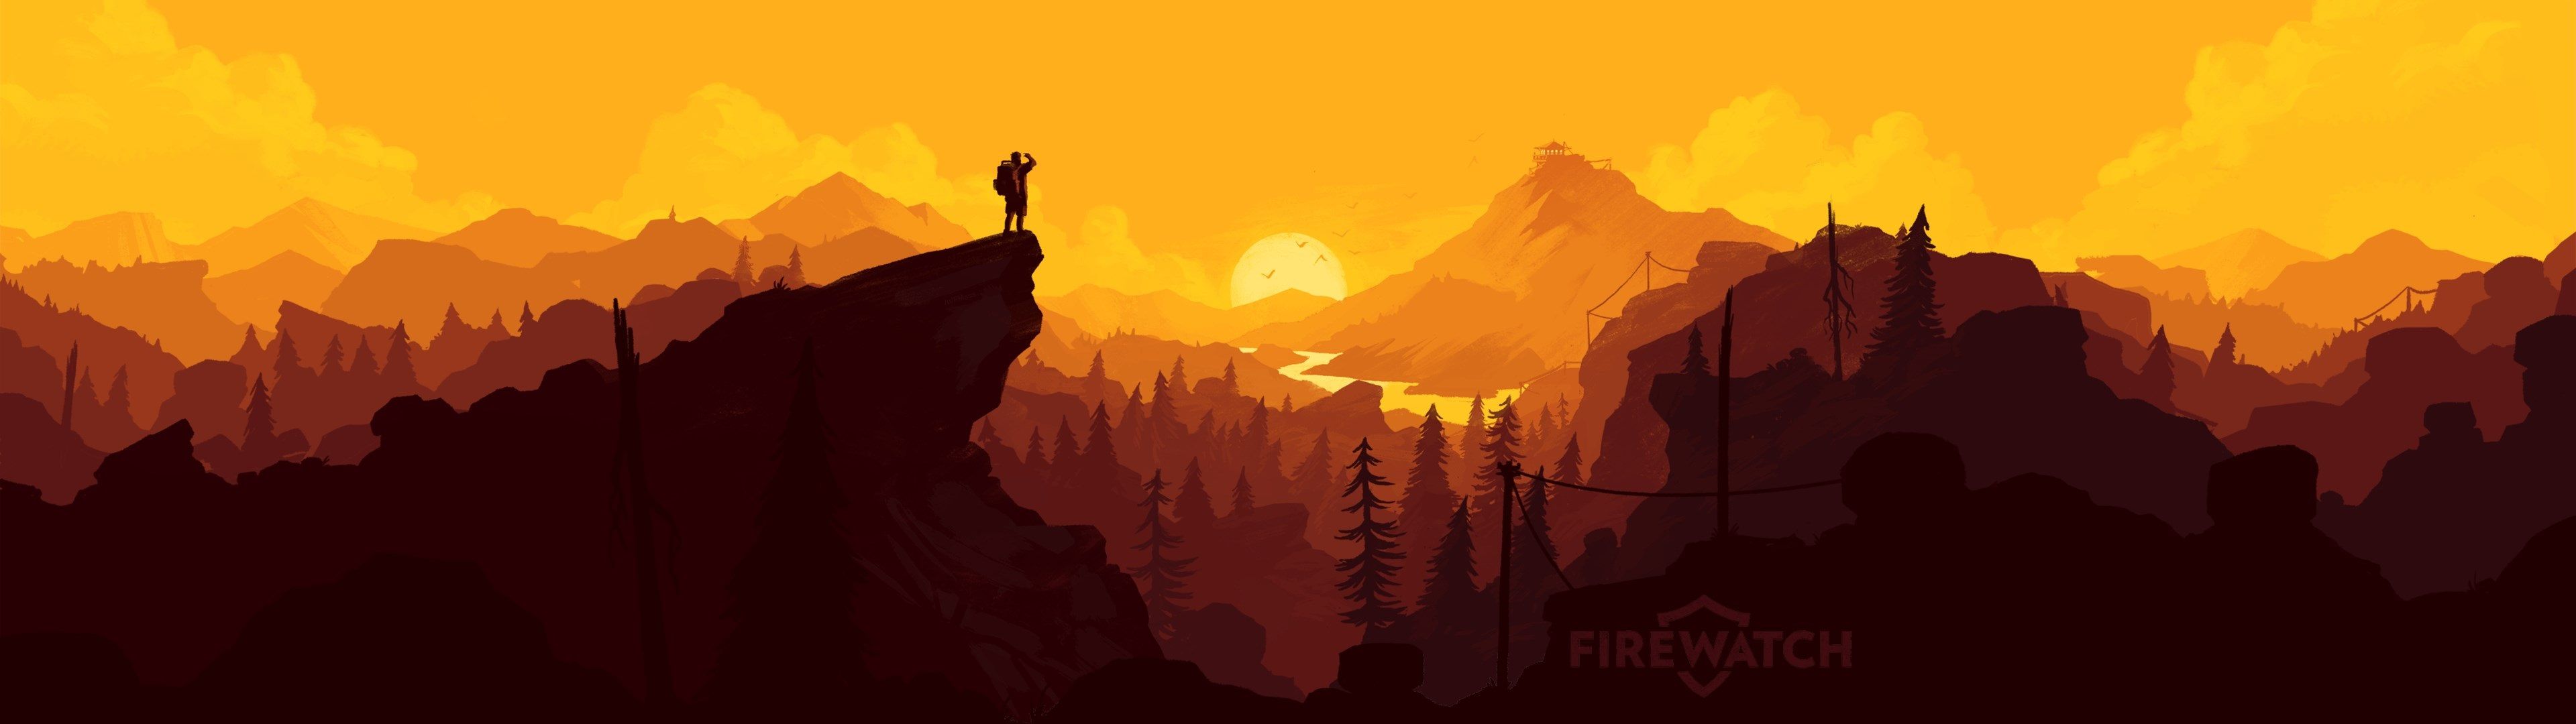 3840x1080 wallpaper hd,sky,natural landscape,orange,illustration,adventure game